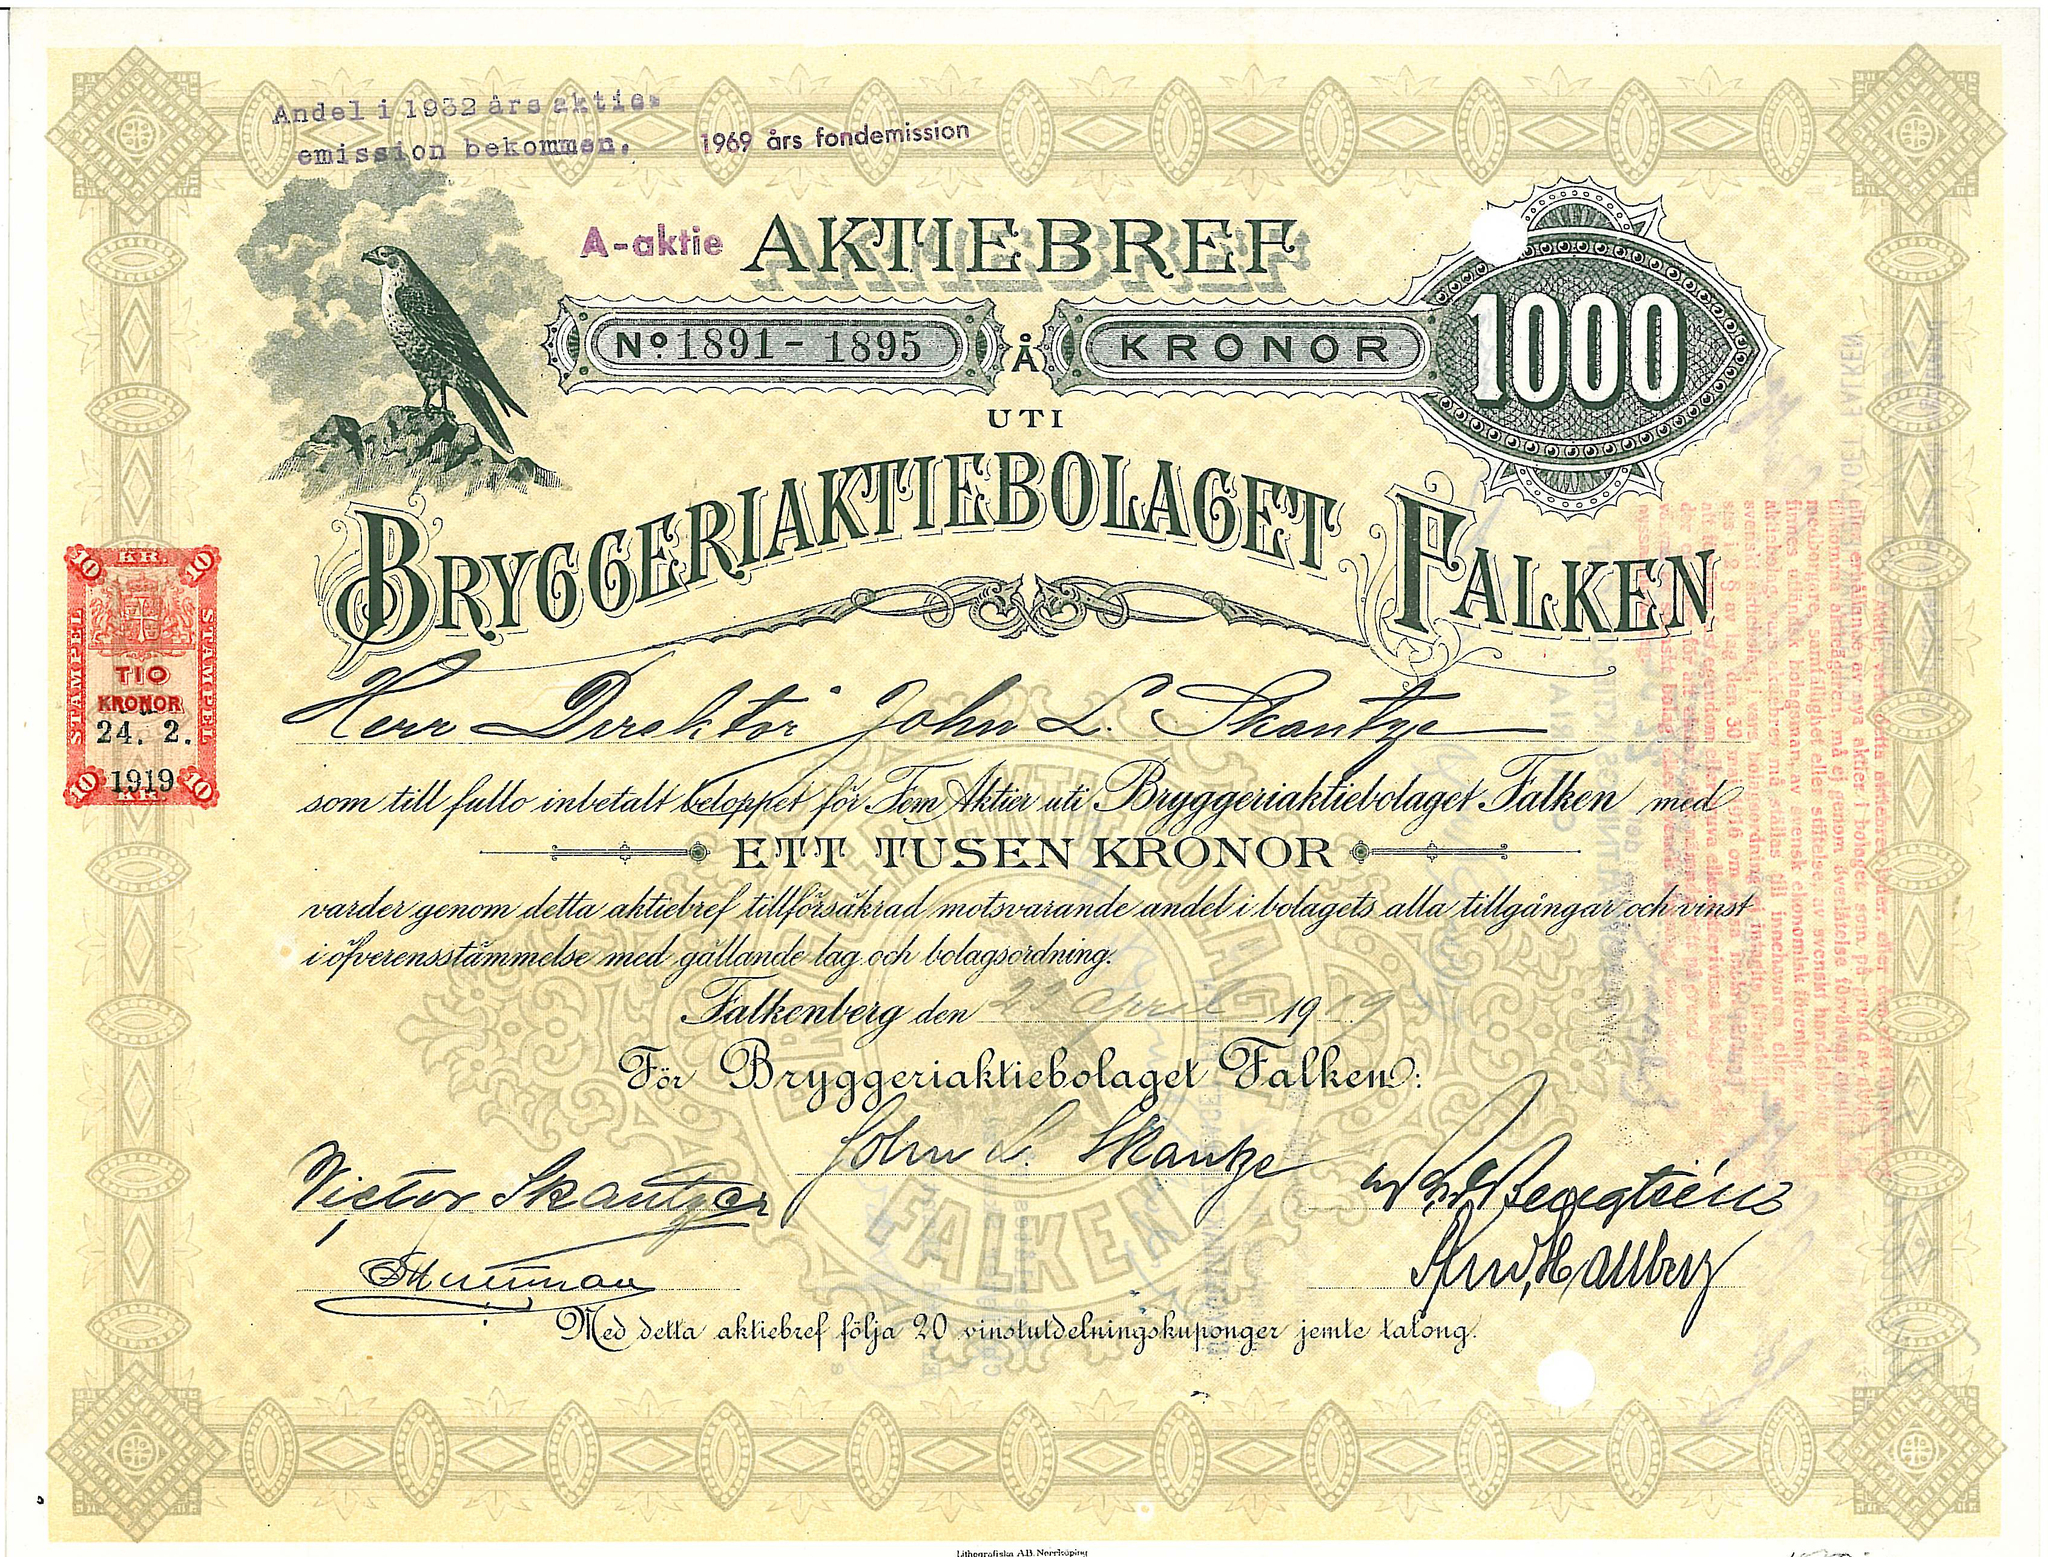 Bryggeri AB Falken, 1919